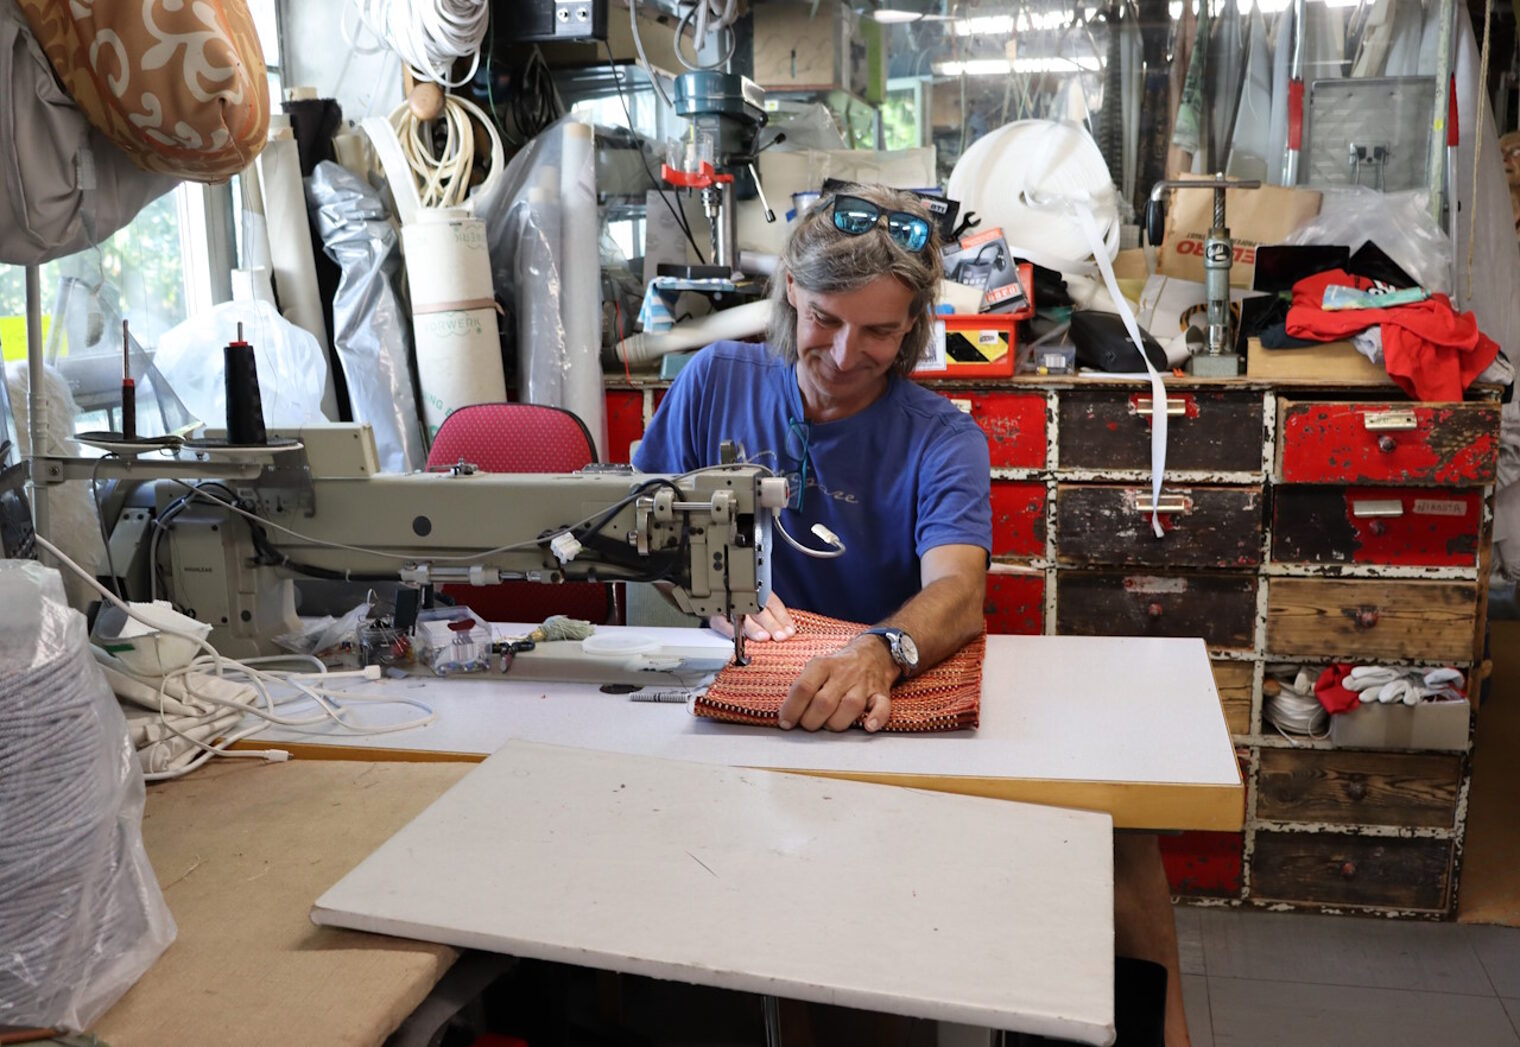 Raumausstatter Strehlow mit einem Projekt an der Nähmaschine in seiner Werkstatt.